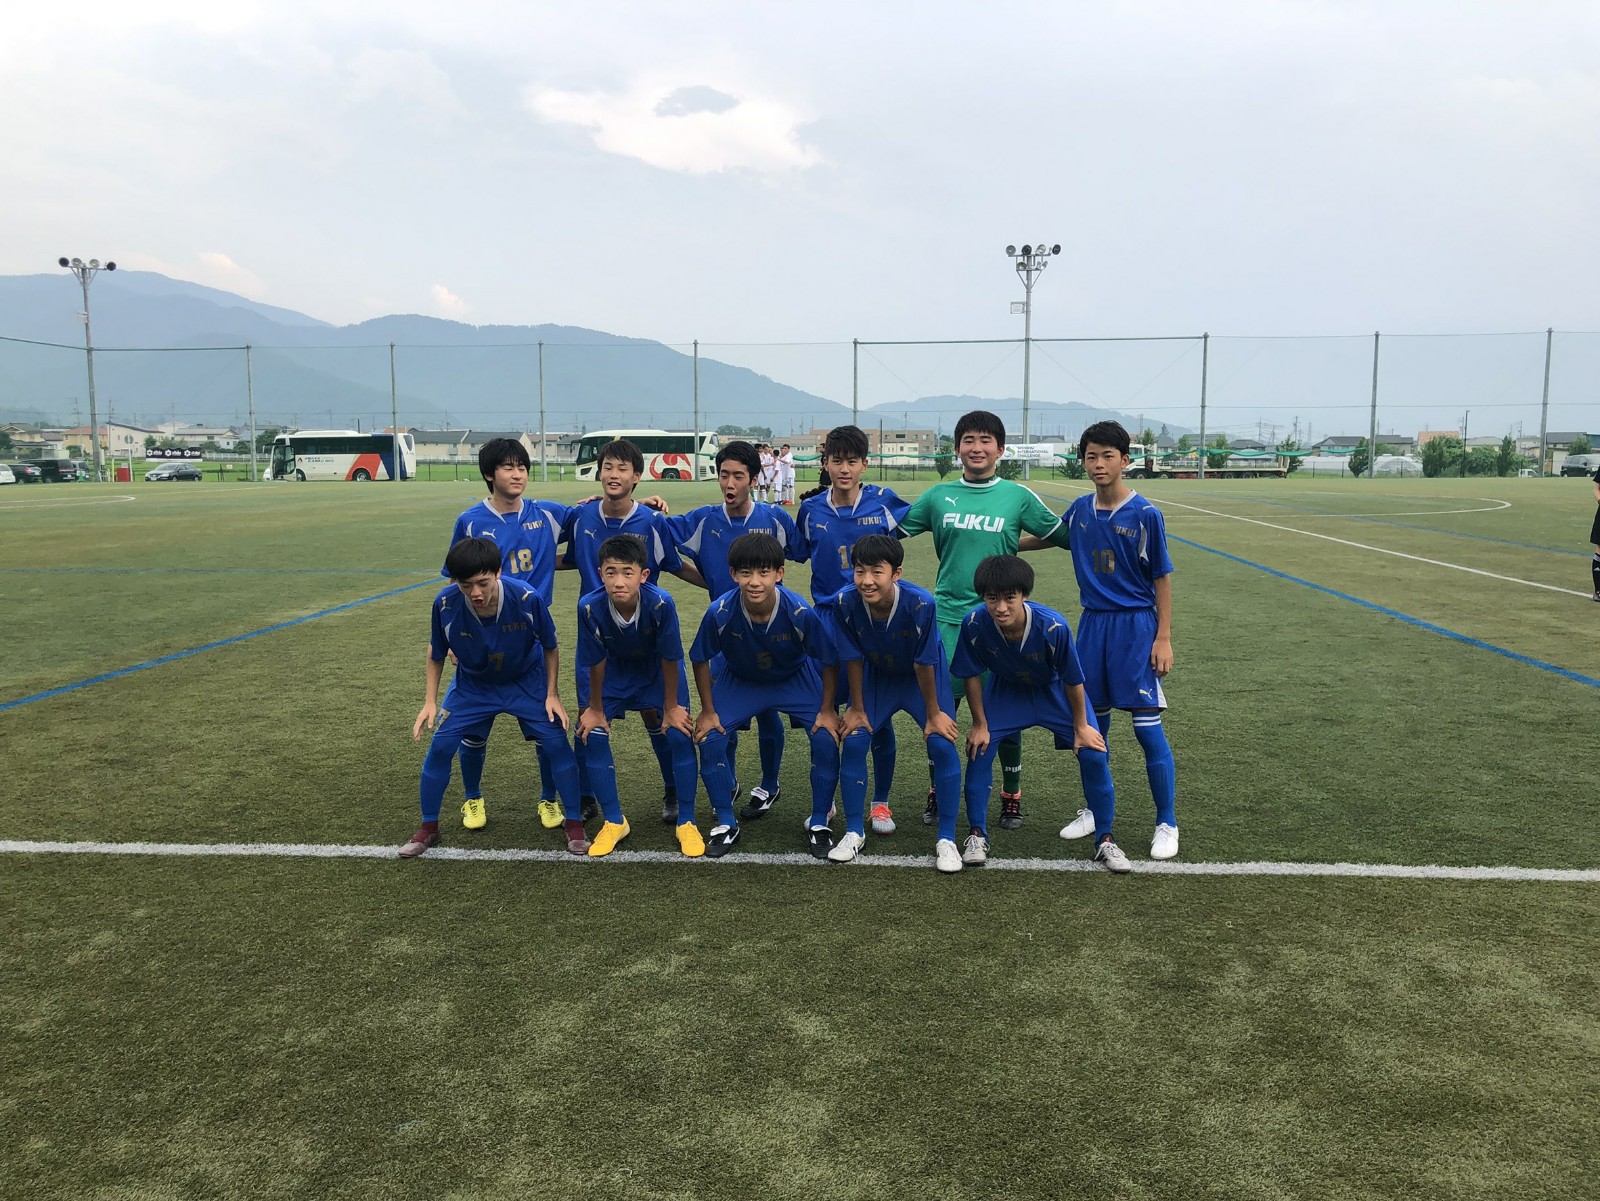 信州チャレンジ19 開催のお知らせ 及び 試合結果 長野県サッカー協会